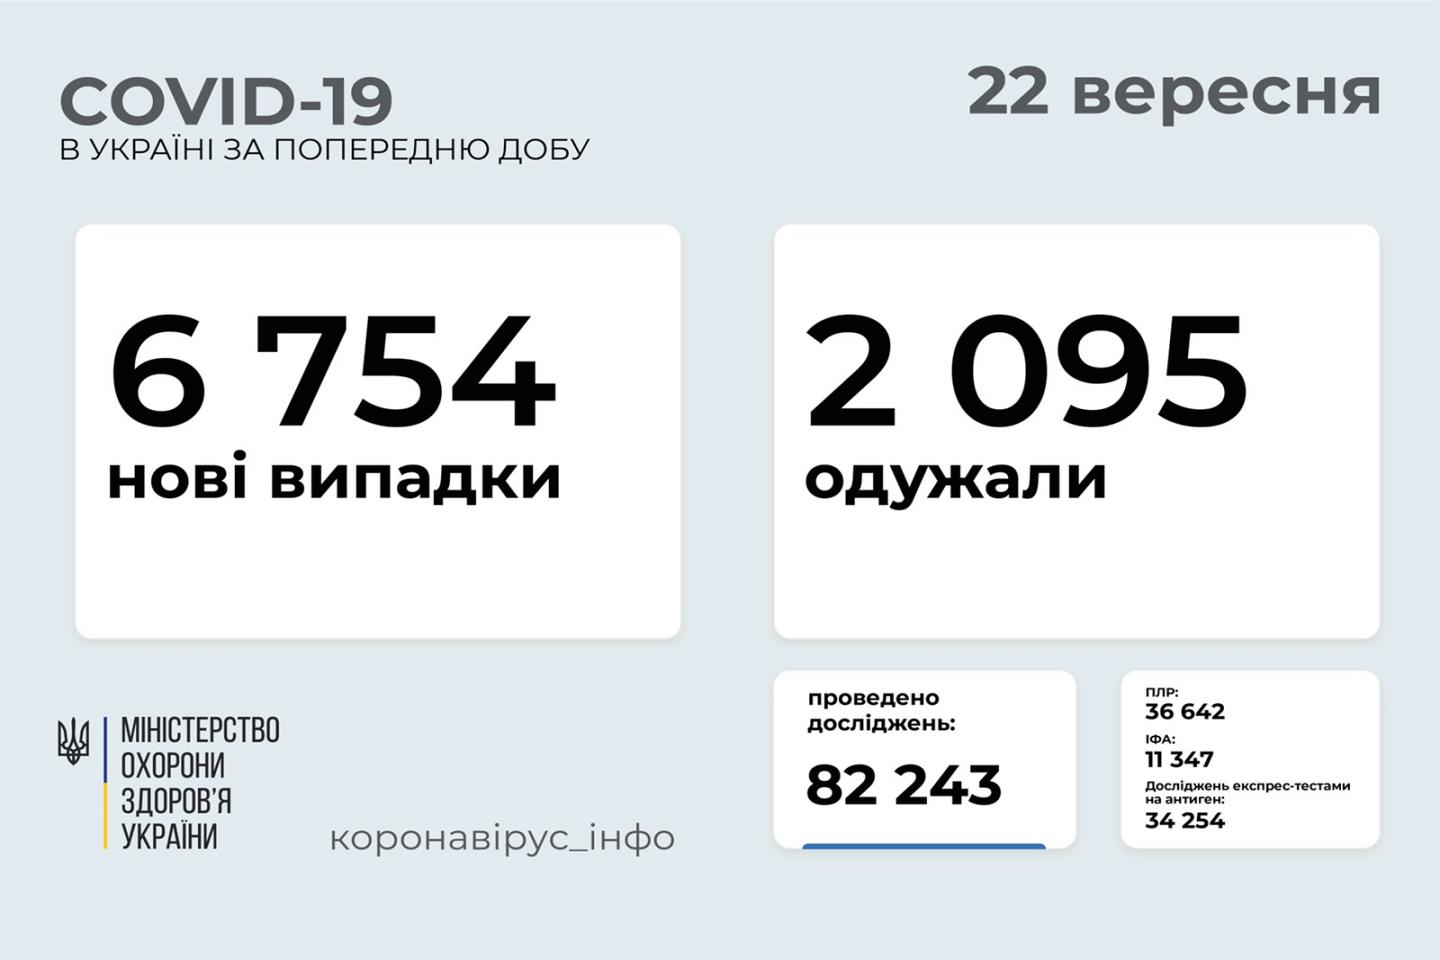 http://dunrada.gov.ua/uploadfile/archive_news/2021/09/22/2021-09-22_1637/images/images-30395.jpg